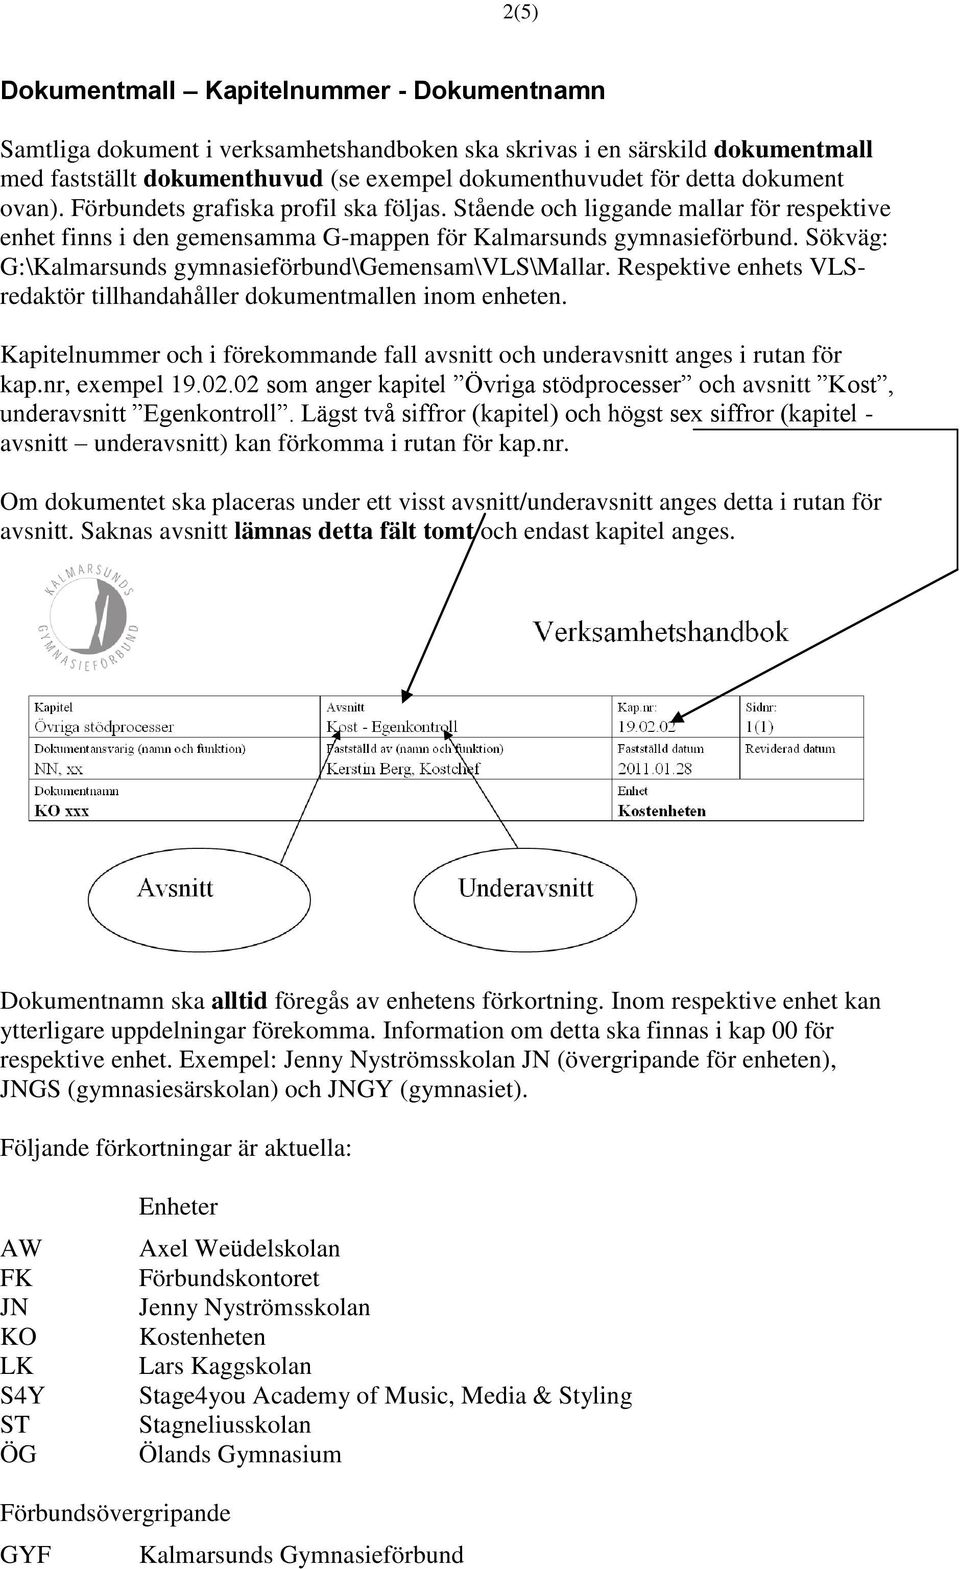 Sökväg: G:\Kalmarsunds gymnasieförbund\gemensam\vls\mallar. Respektive enhets VLSredaktör tillhandahåller dokumentmallen inom enheten.